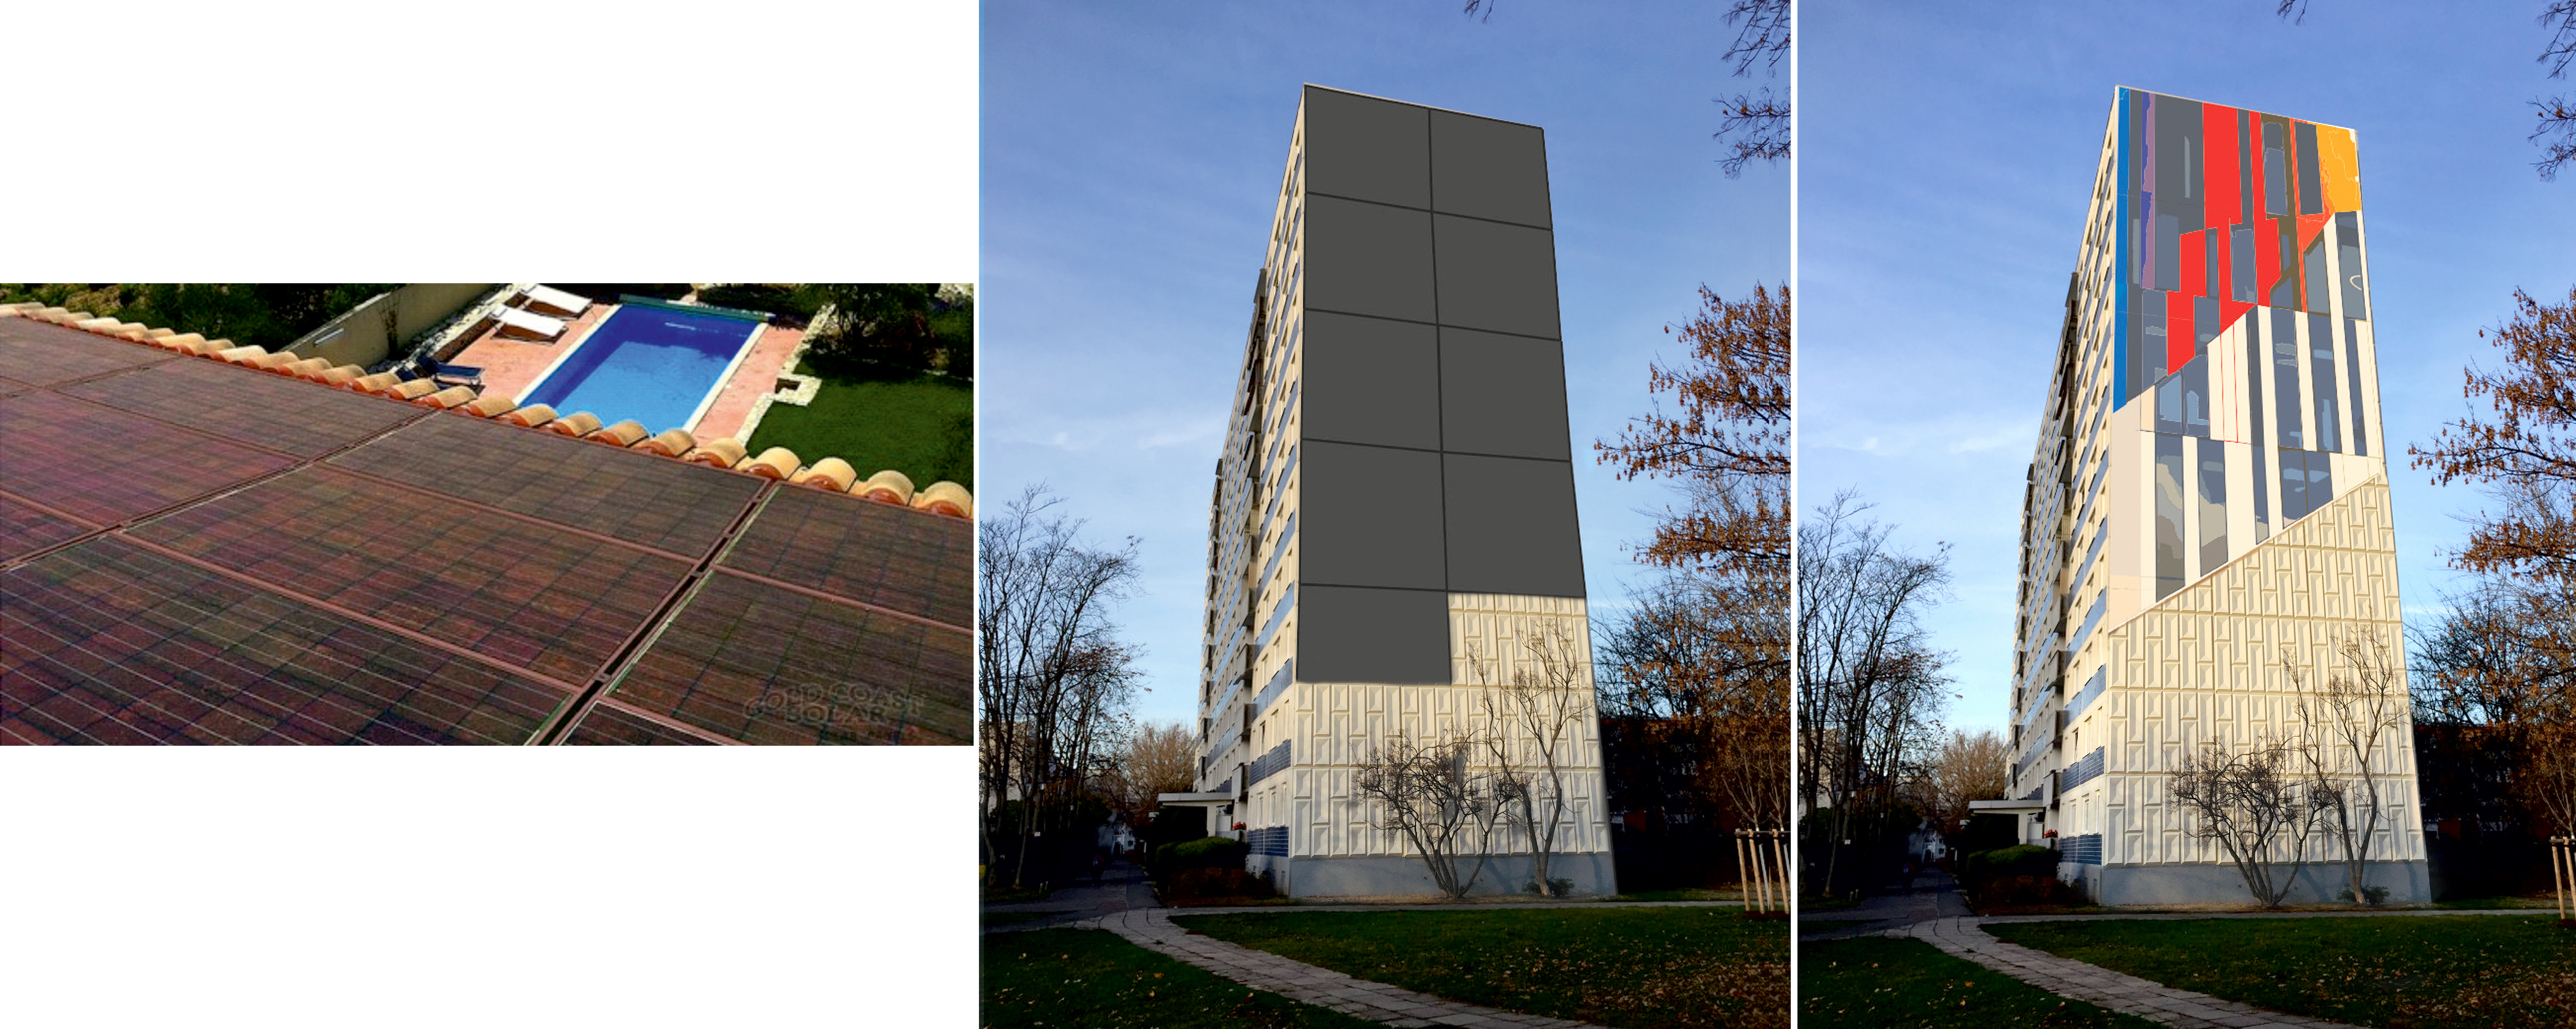 Color PV solar facade